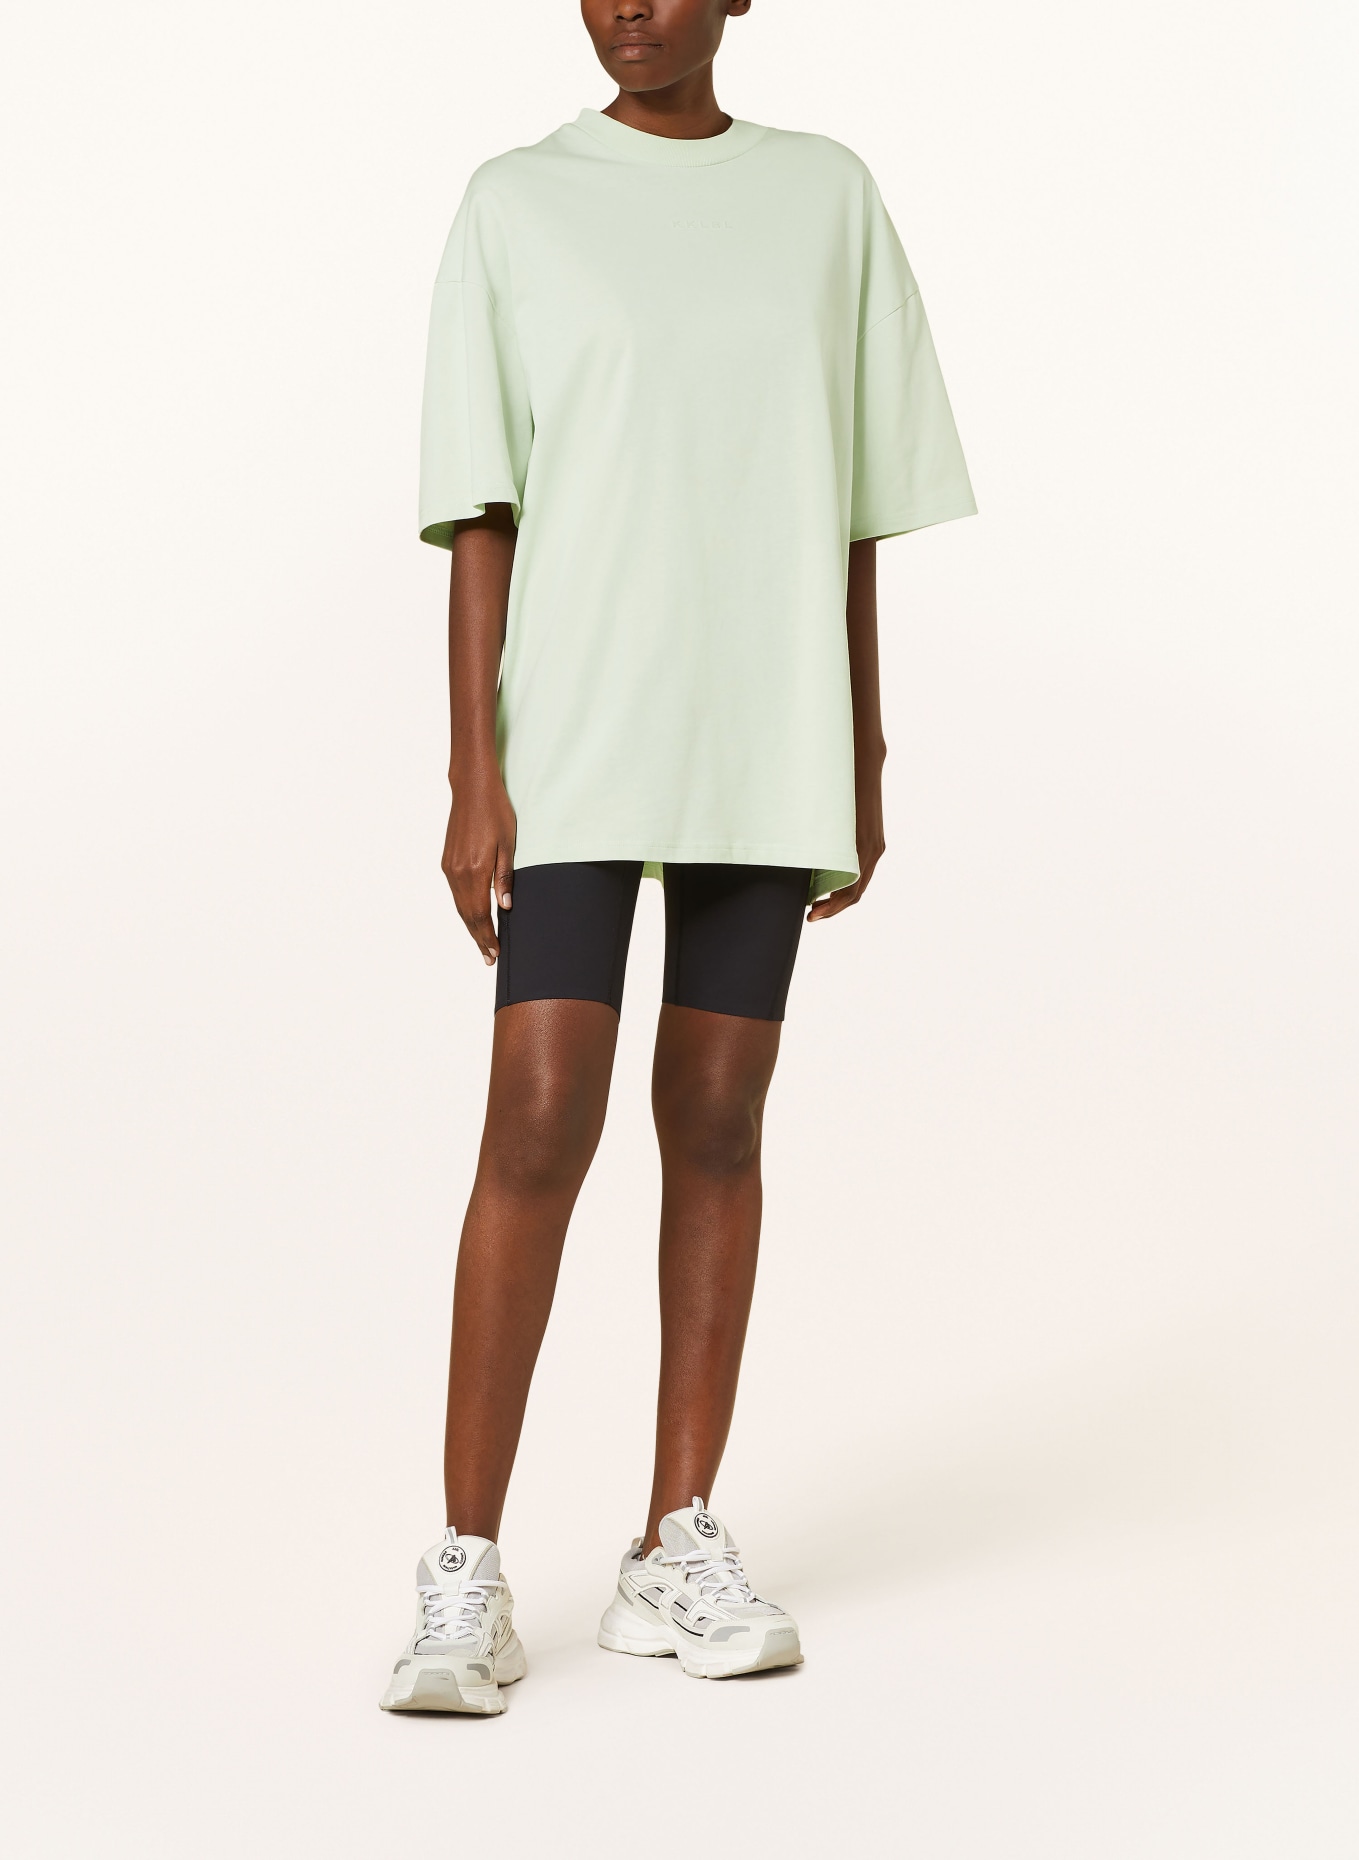 KARO KAUER Oversized shirt, Color: MINT (Image 2)